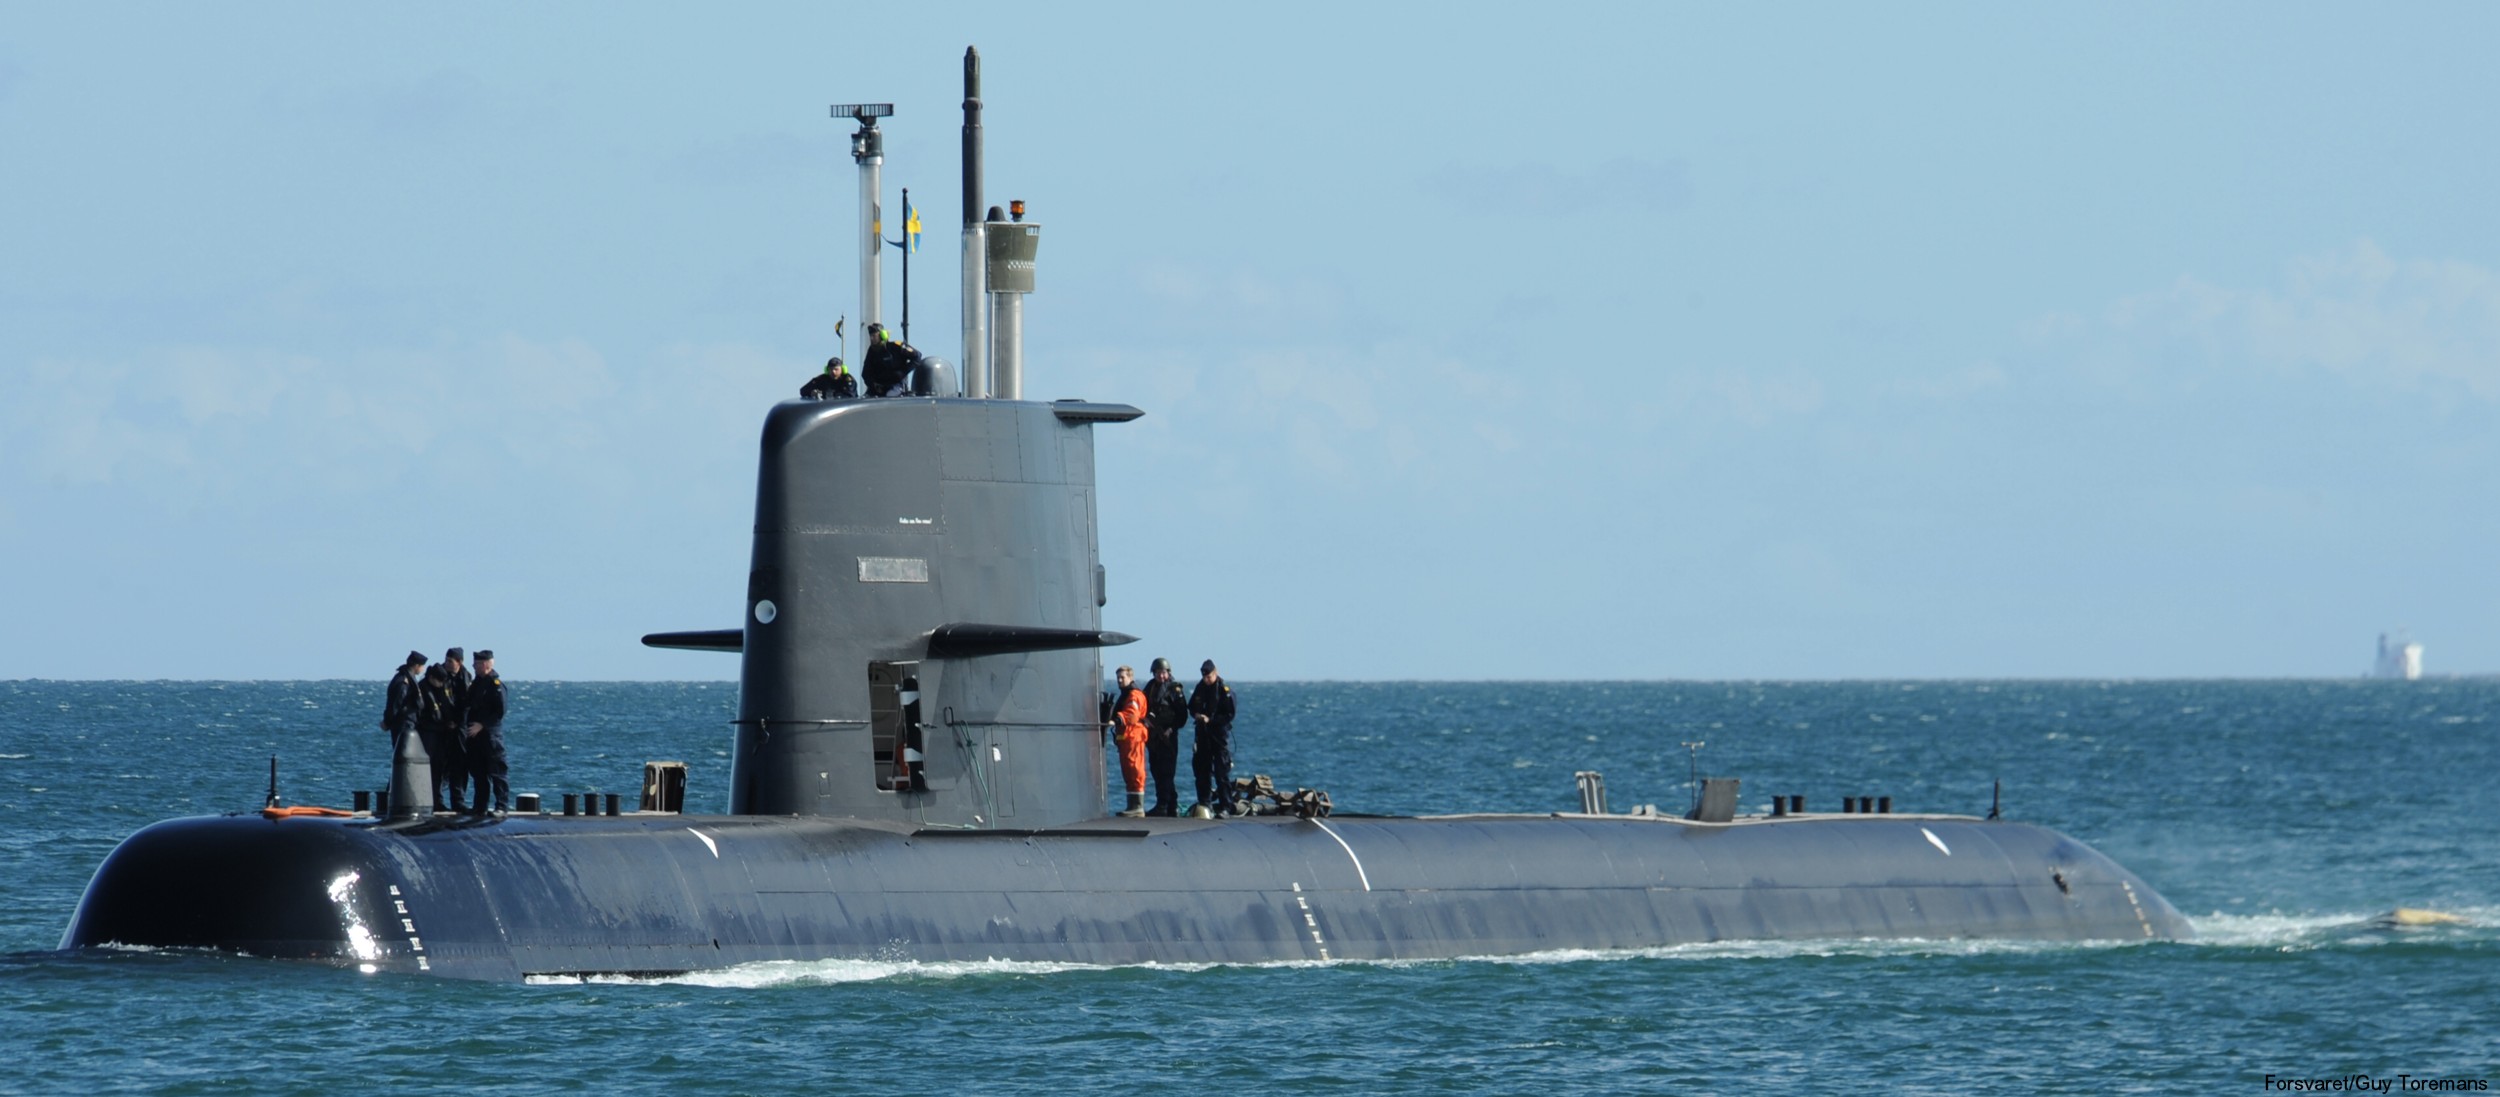 hswms hms gotland gtd class submarine ssk swedish navy svenska marinen försvarsmakten kockums 24